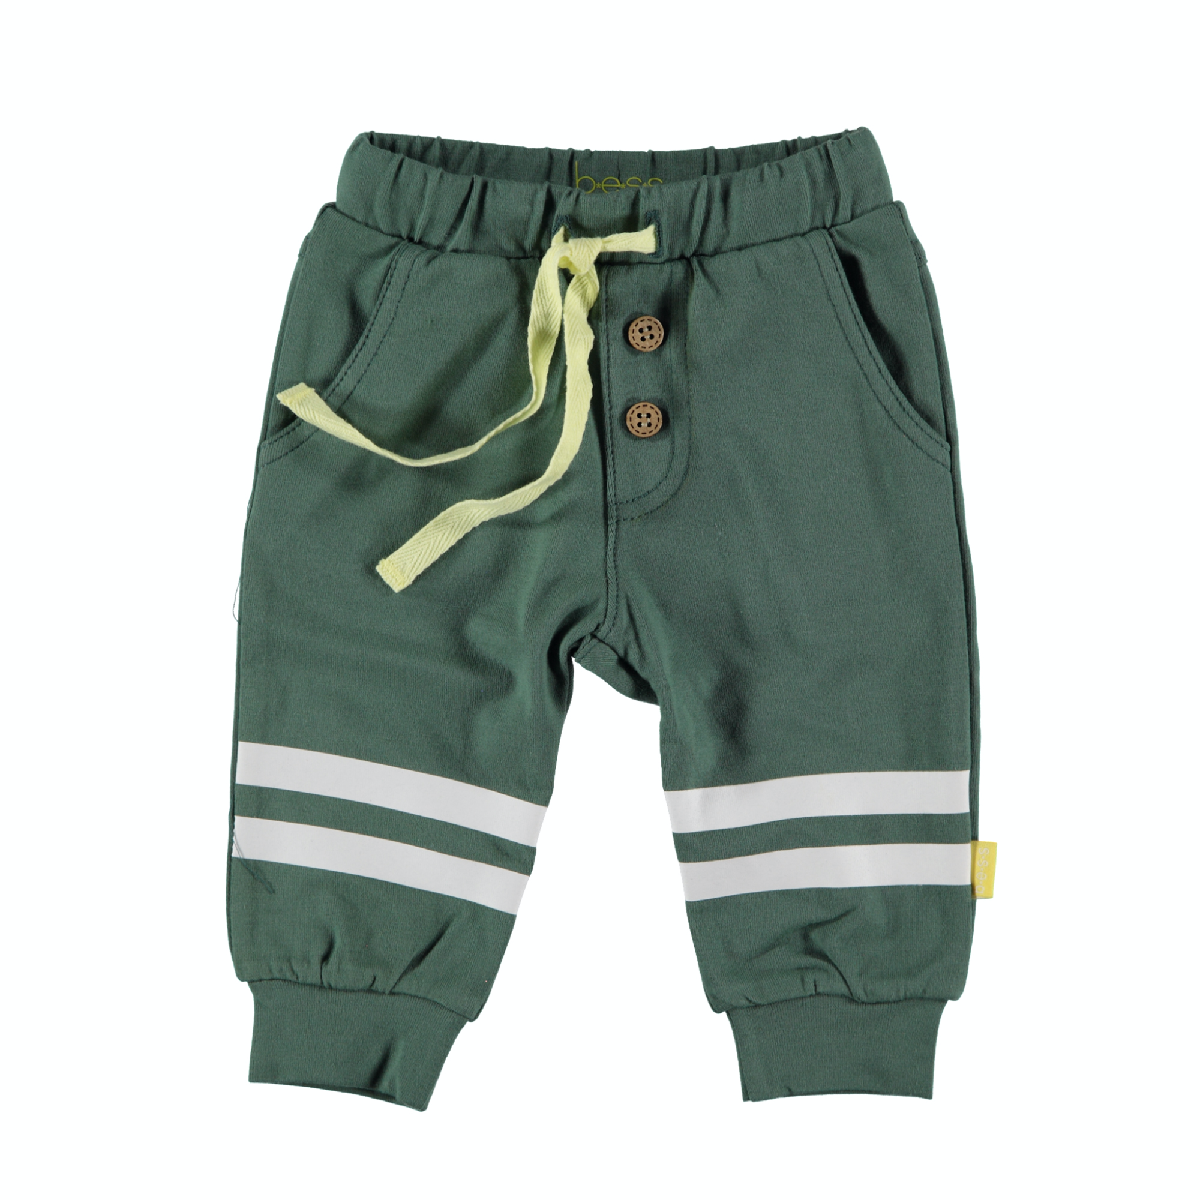 Jongens Pants Knee Stripes van B.E.S.S. in de kleur Green in maat 68.